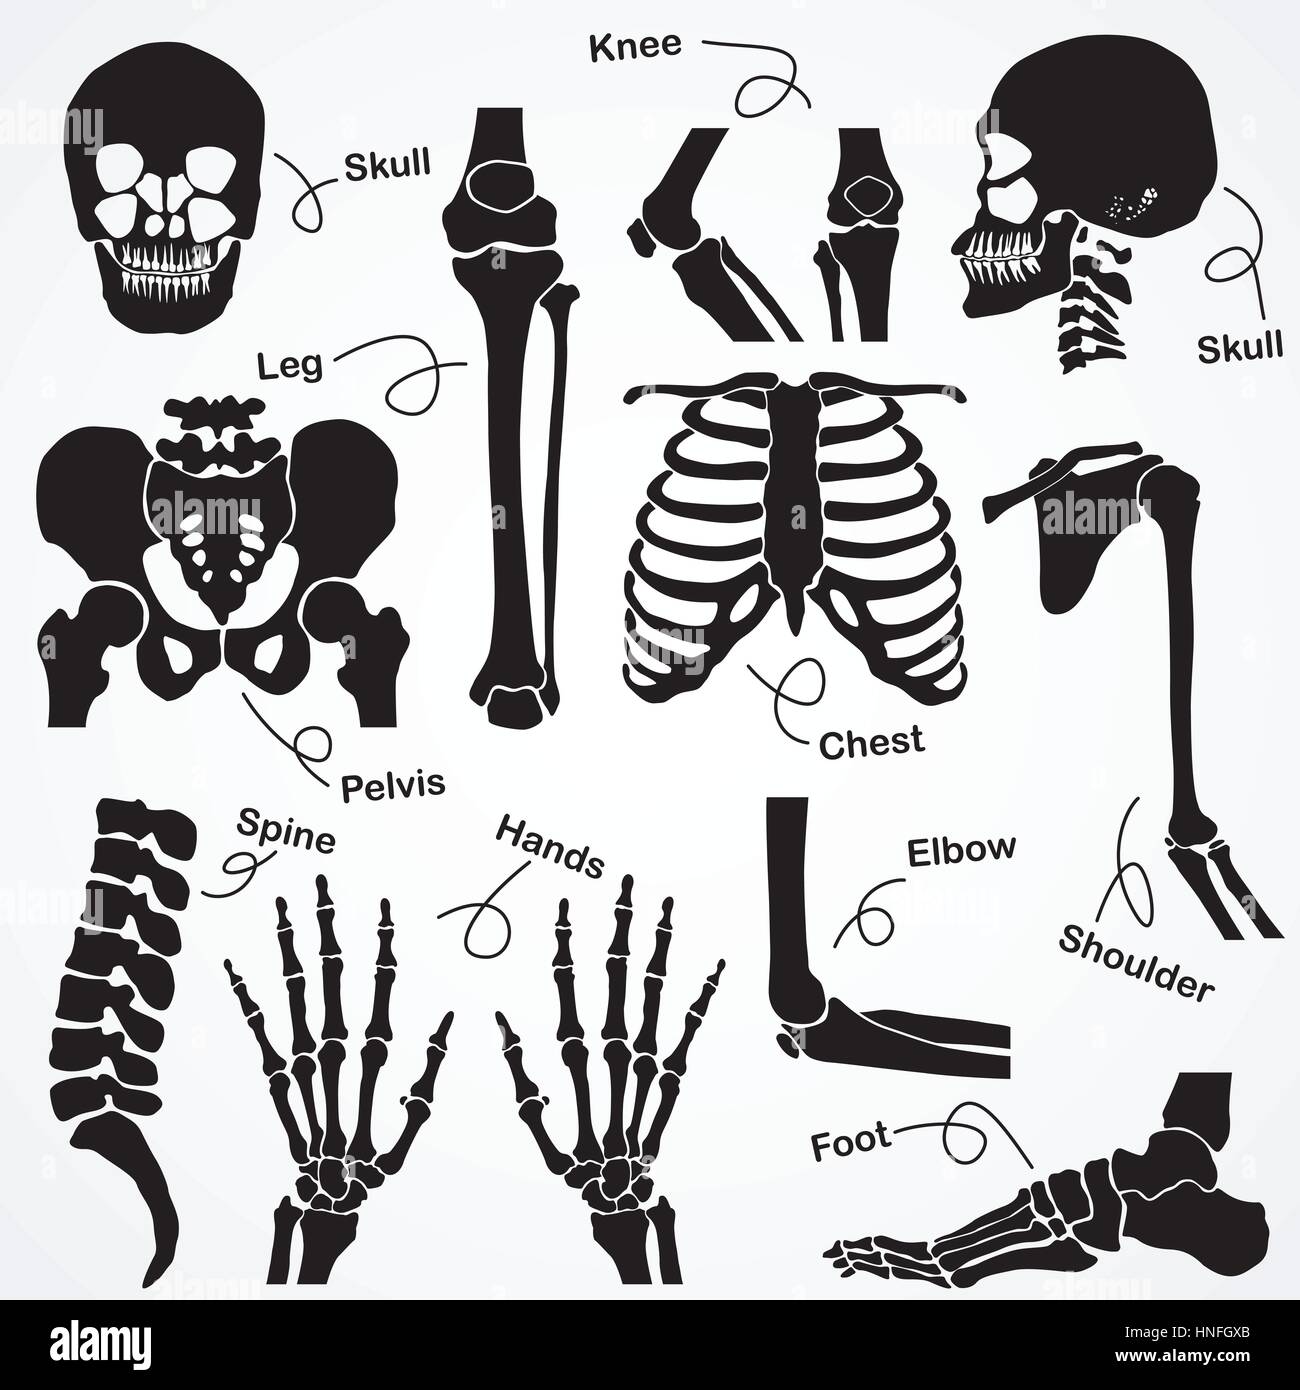 Raccolta dello scheletro umano (Cranio,collo,colonna vertebrale,GINOCCHIO,congiunto,mano,polso,dito,retro,BRACCIO,il gomito,avambraccio,piedi,caviglia,gamba,coscia,hip,,pelvica torace, nervatura,clavicola,sh Illustrazione Vettoriale